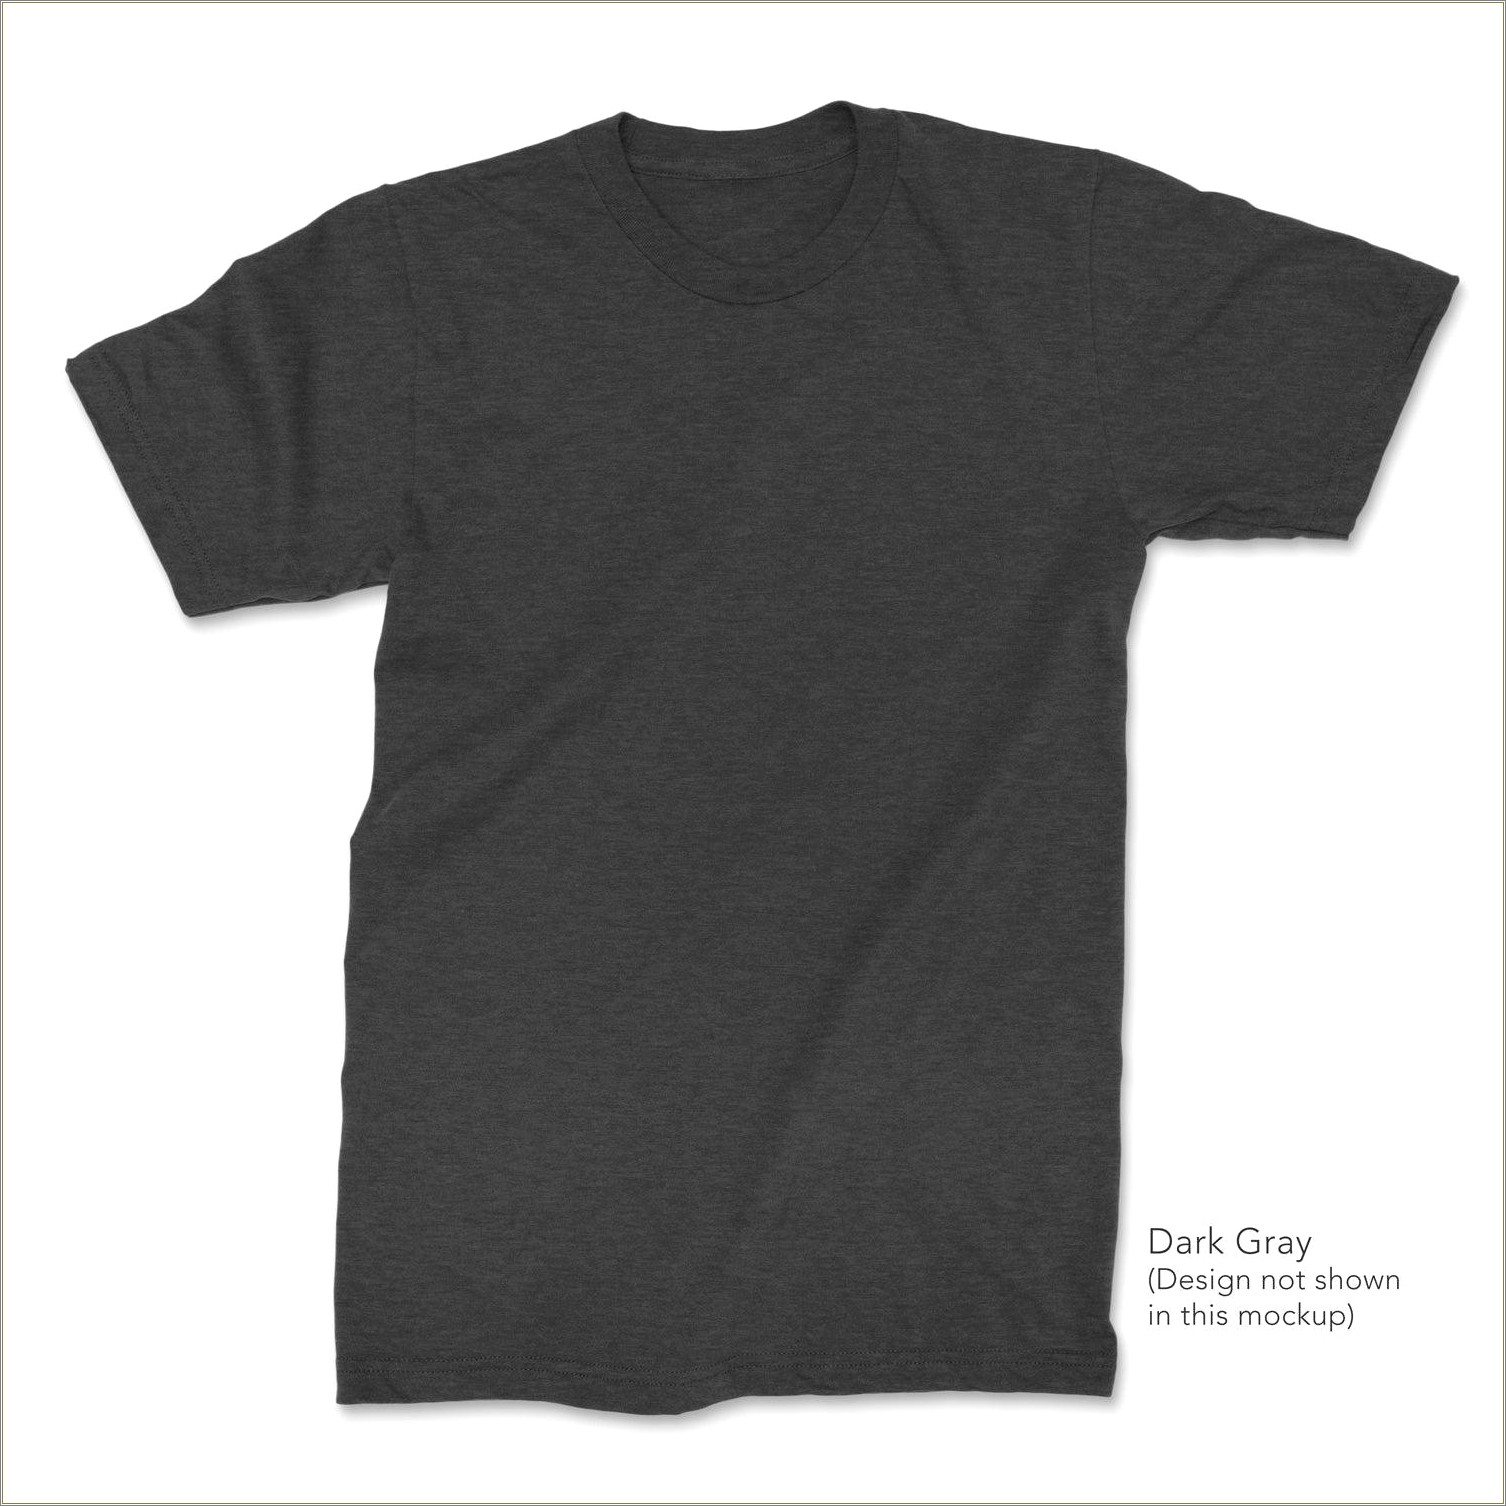 Dark Gray T Shirt Template Free